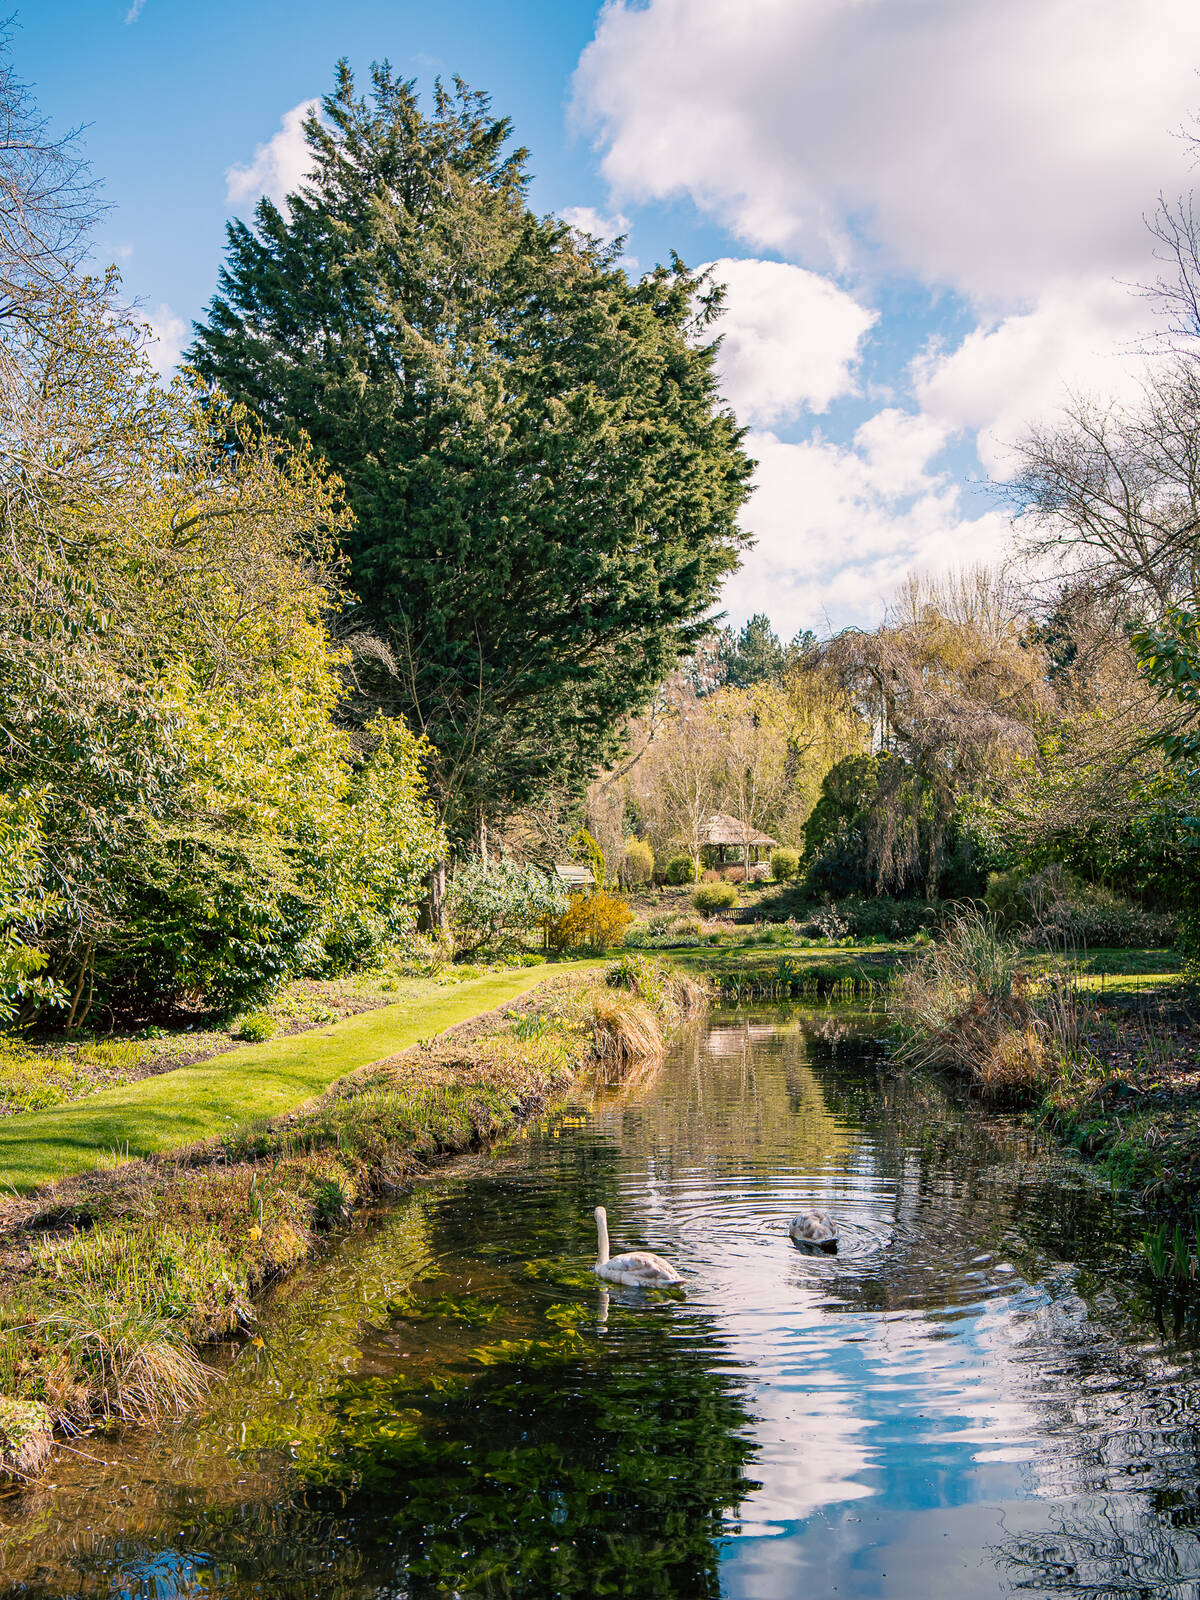 Image of Gooderstone Water Gardens by James Billings.